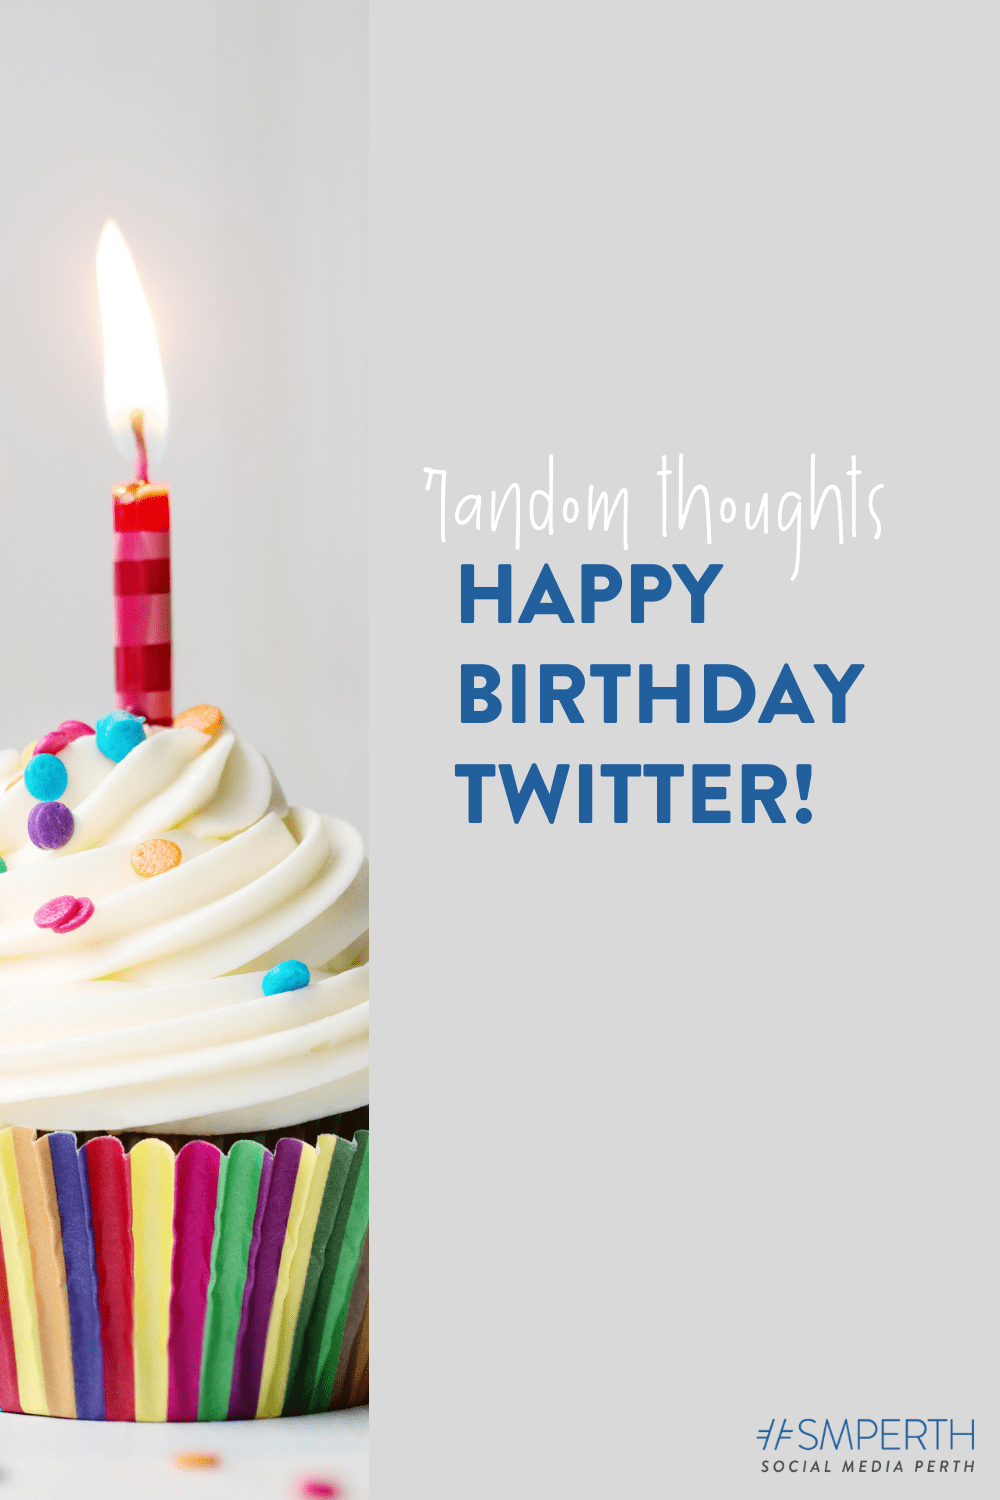 Twitter Anniversary: Twitter celebrates 15 years